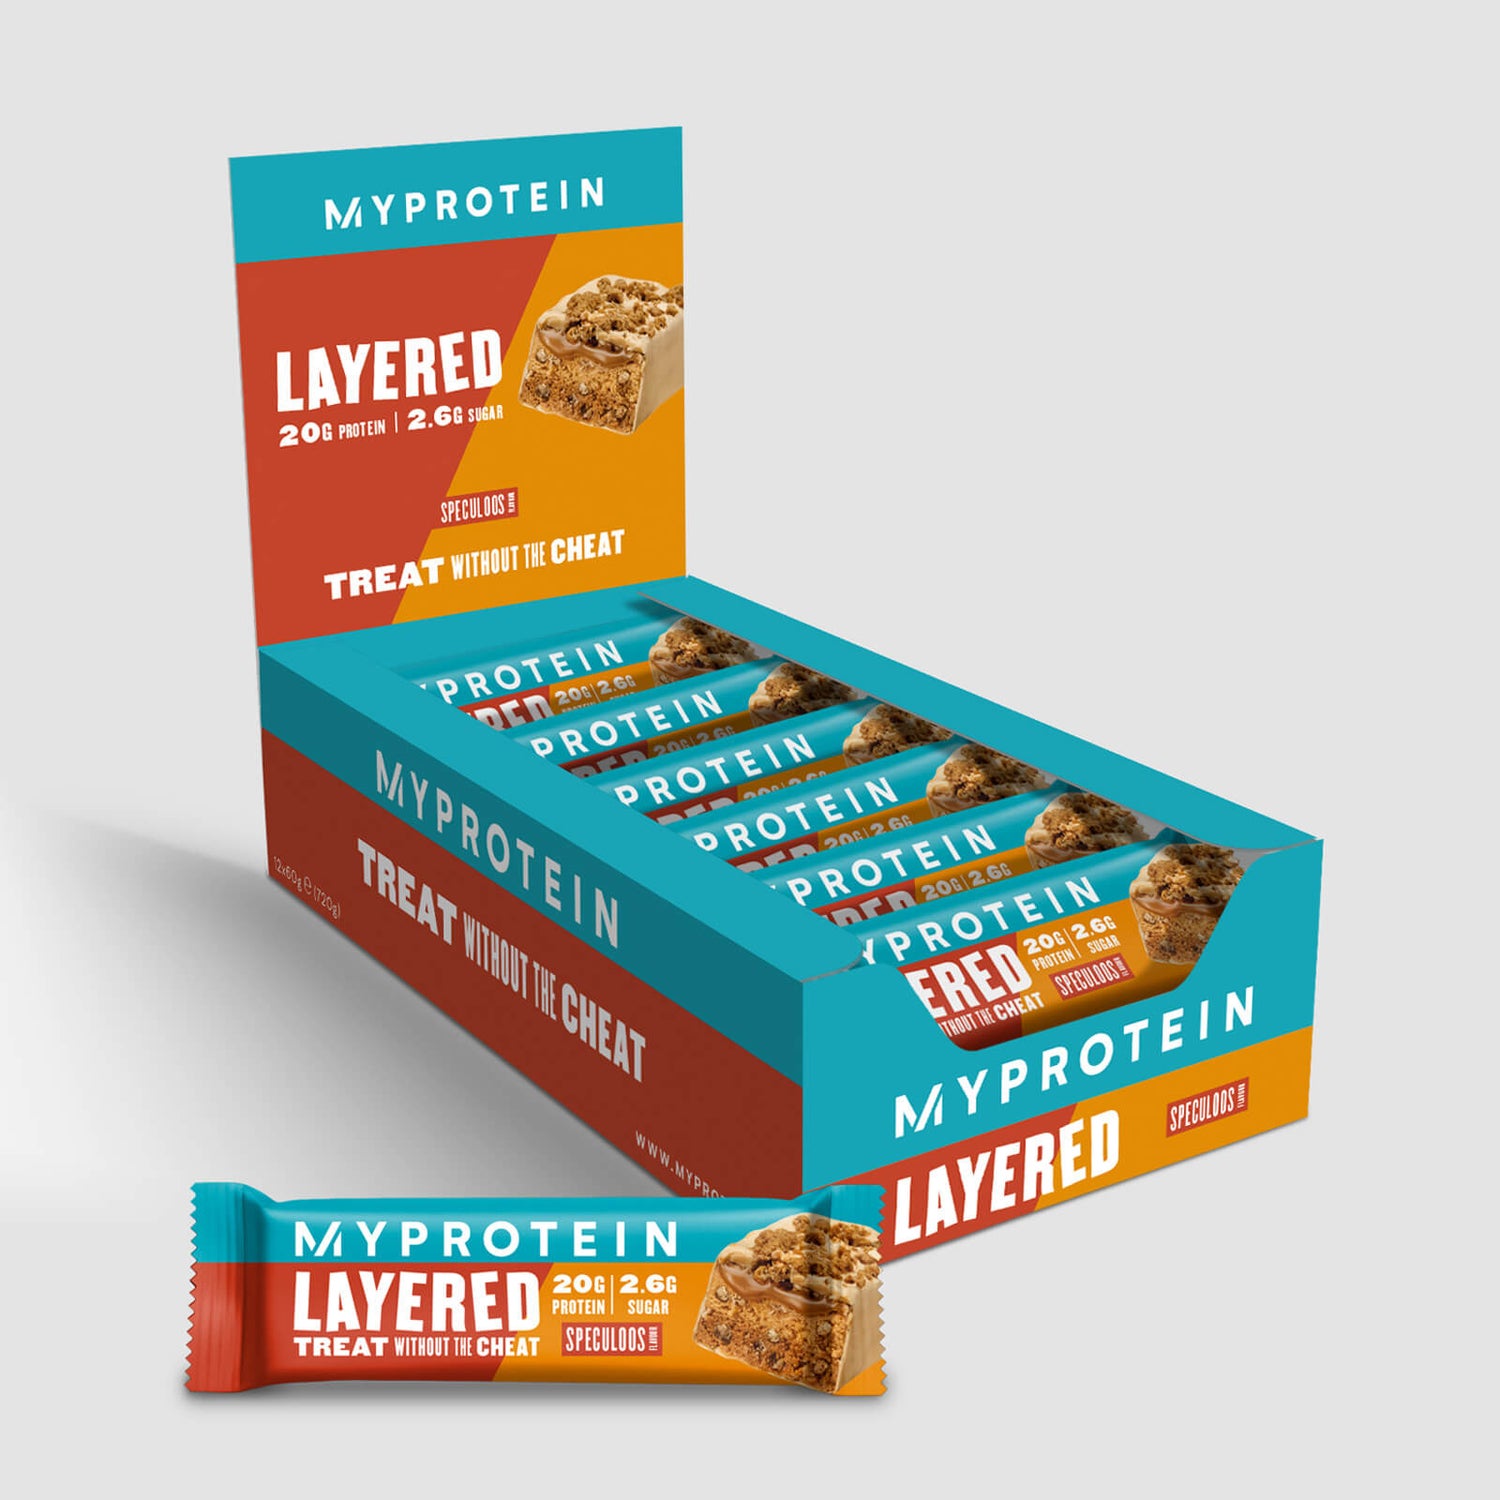 6 Layer Proteinriegel - Spekulatius Limited Edition